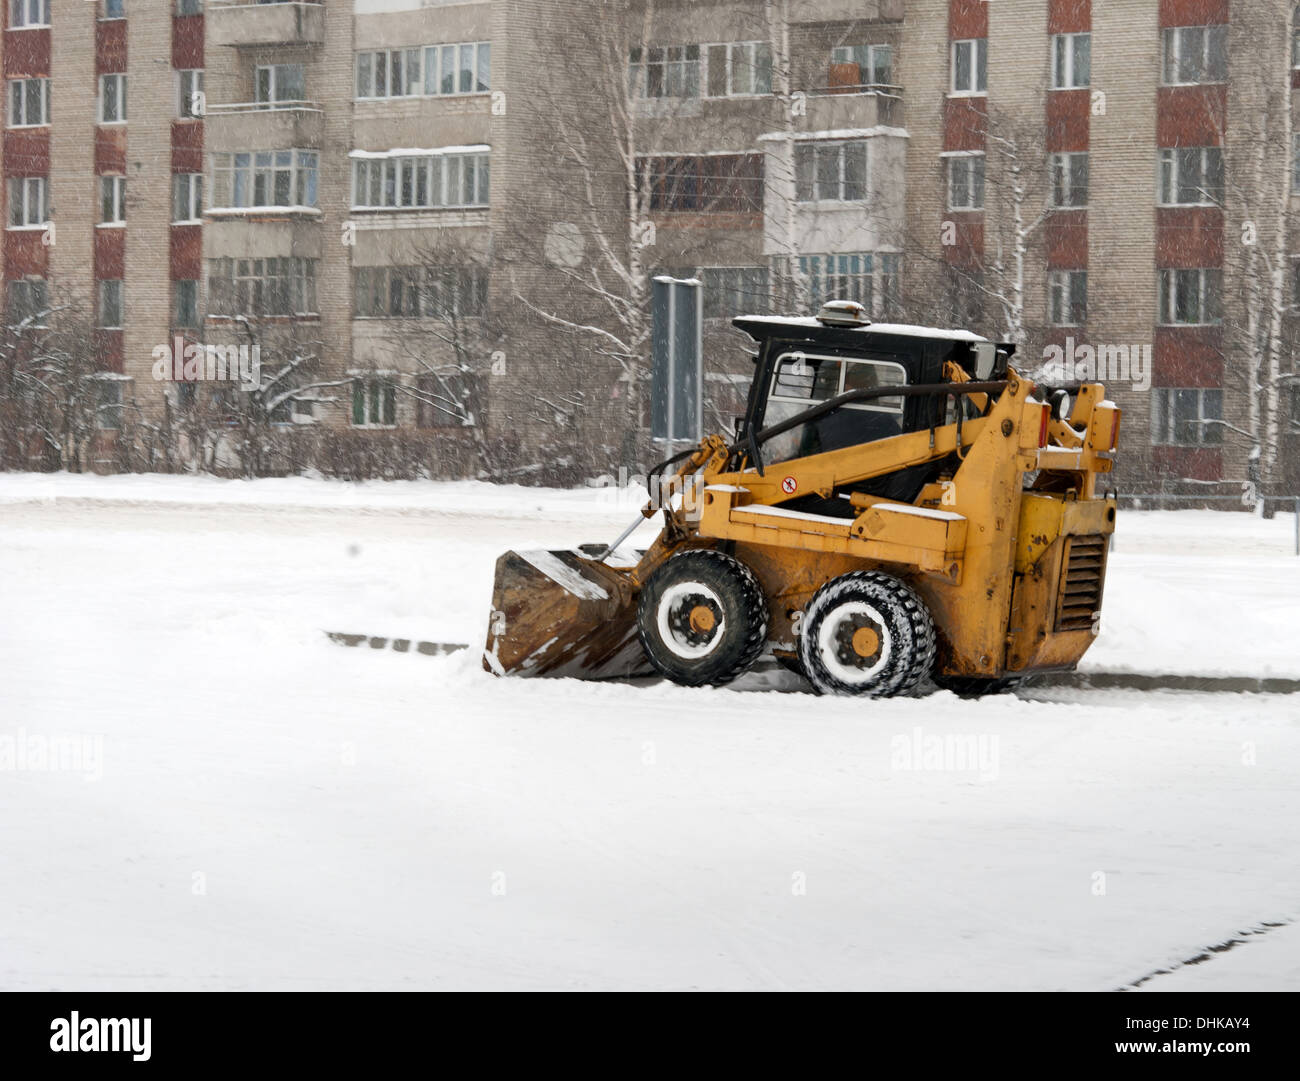 Radlader machine Schnee entfernen im Winter auf der Straße Stockfotografie  - Alamy